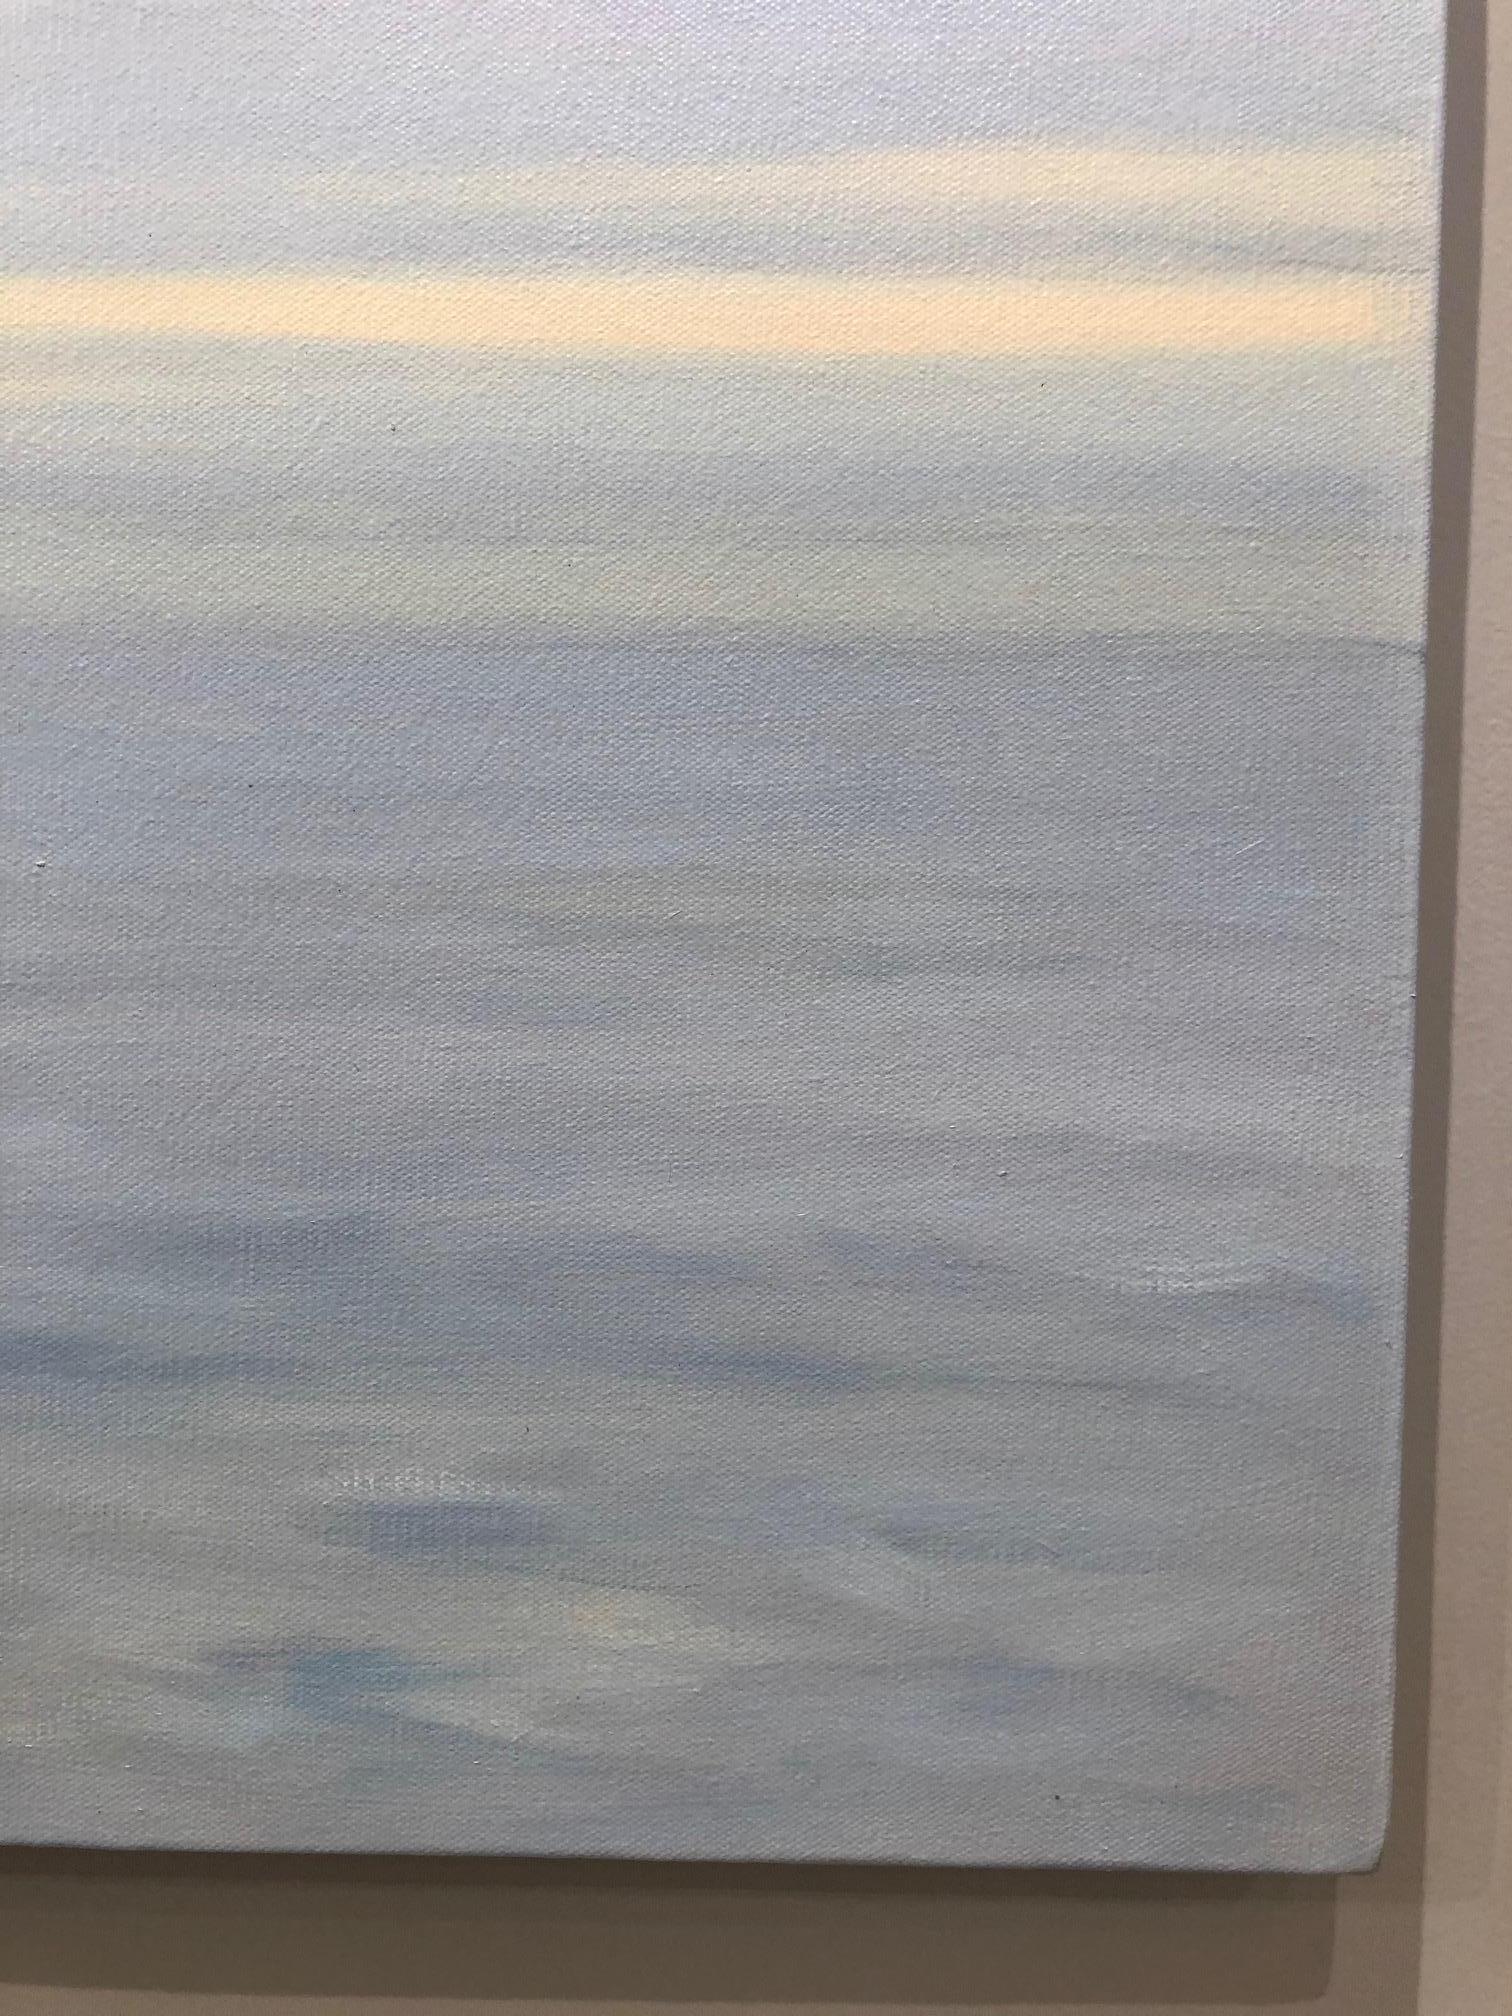 Grey Ocean - American Realist Painting by Willard Dixon